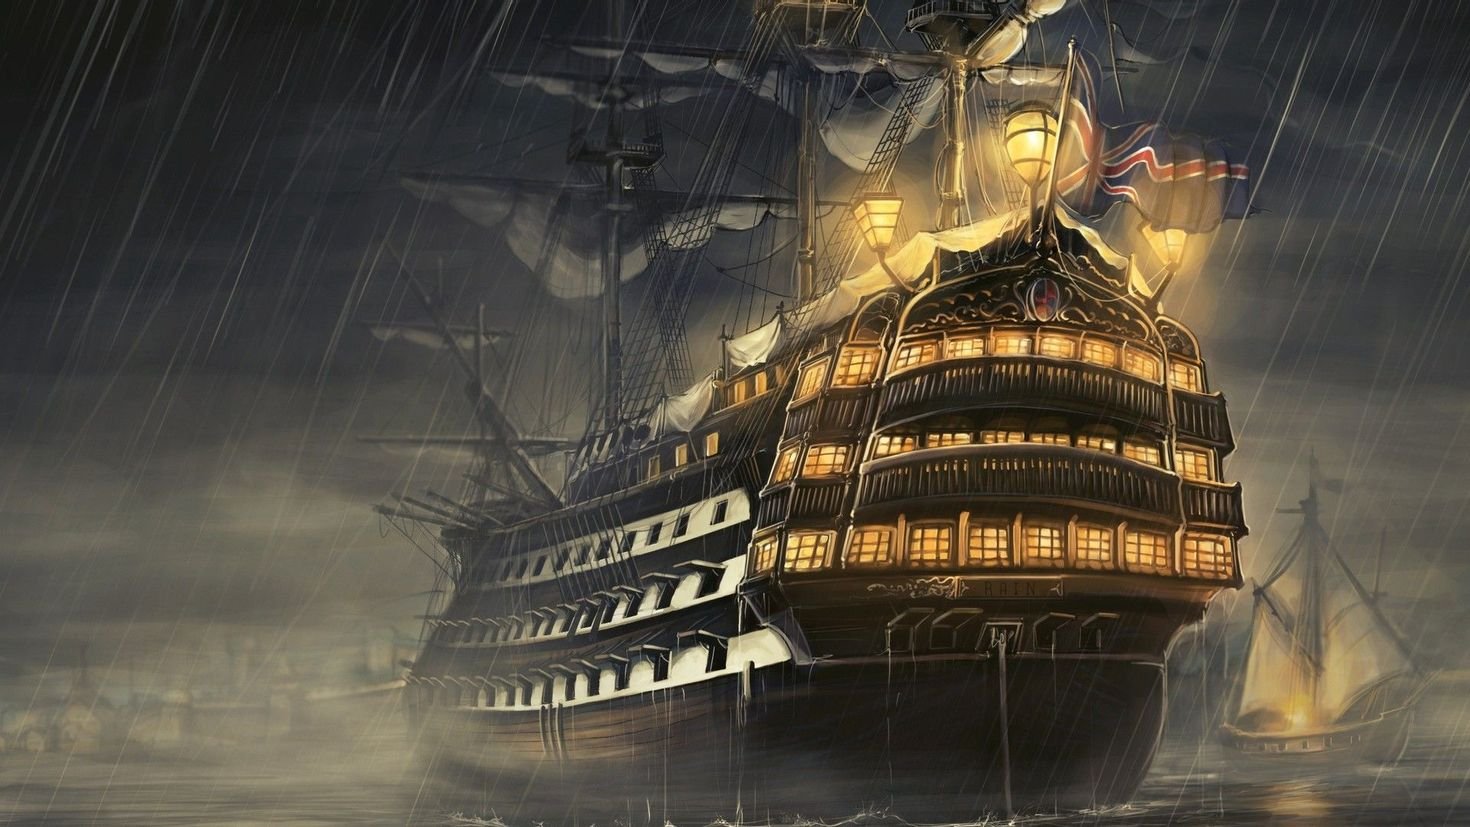 Старый корабль текст. Пиратский корабль на рабочий стол. Пиратские корабли картинки в высоком качестве. Фото старинного корабля с жемчужиной. Старинные корабли на атмосферном электричестве.